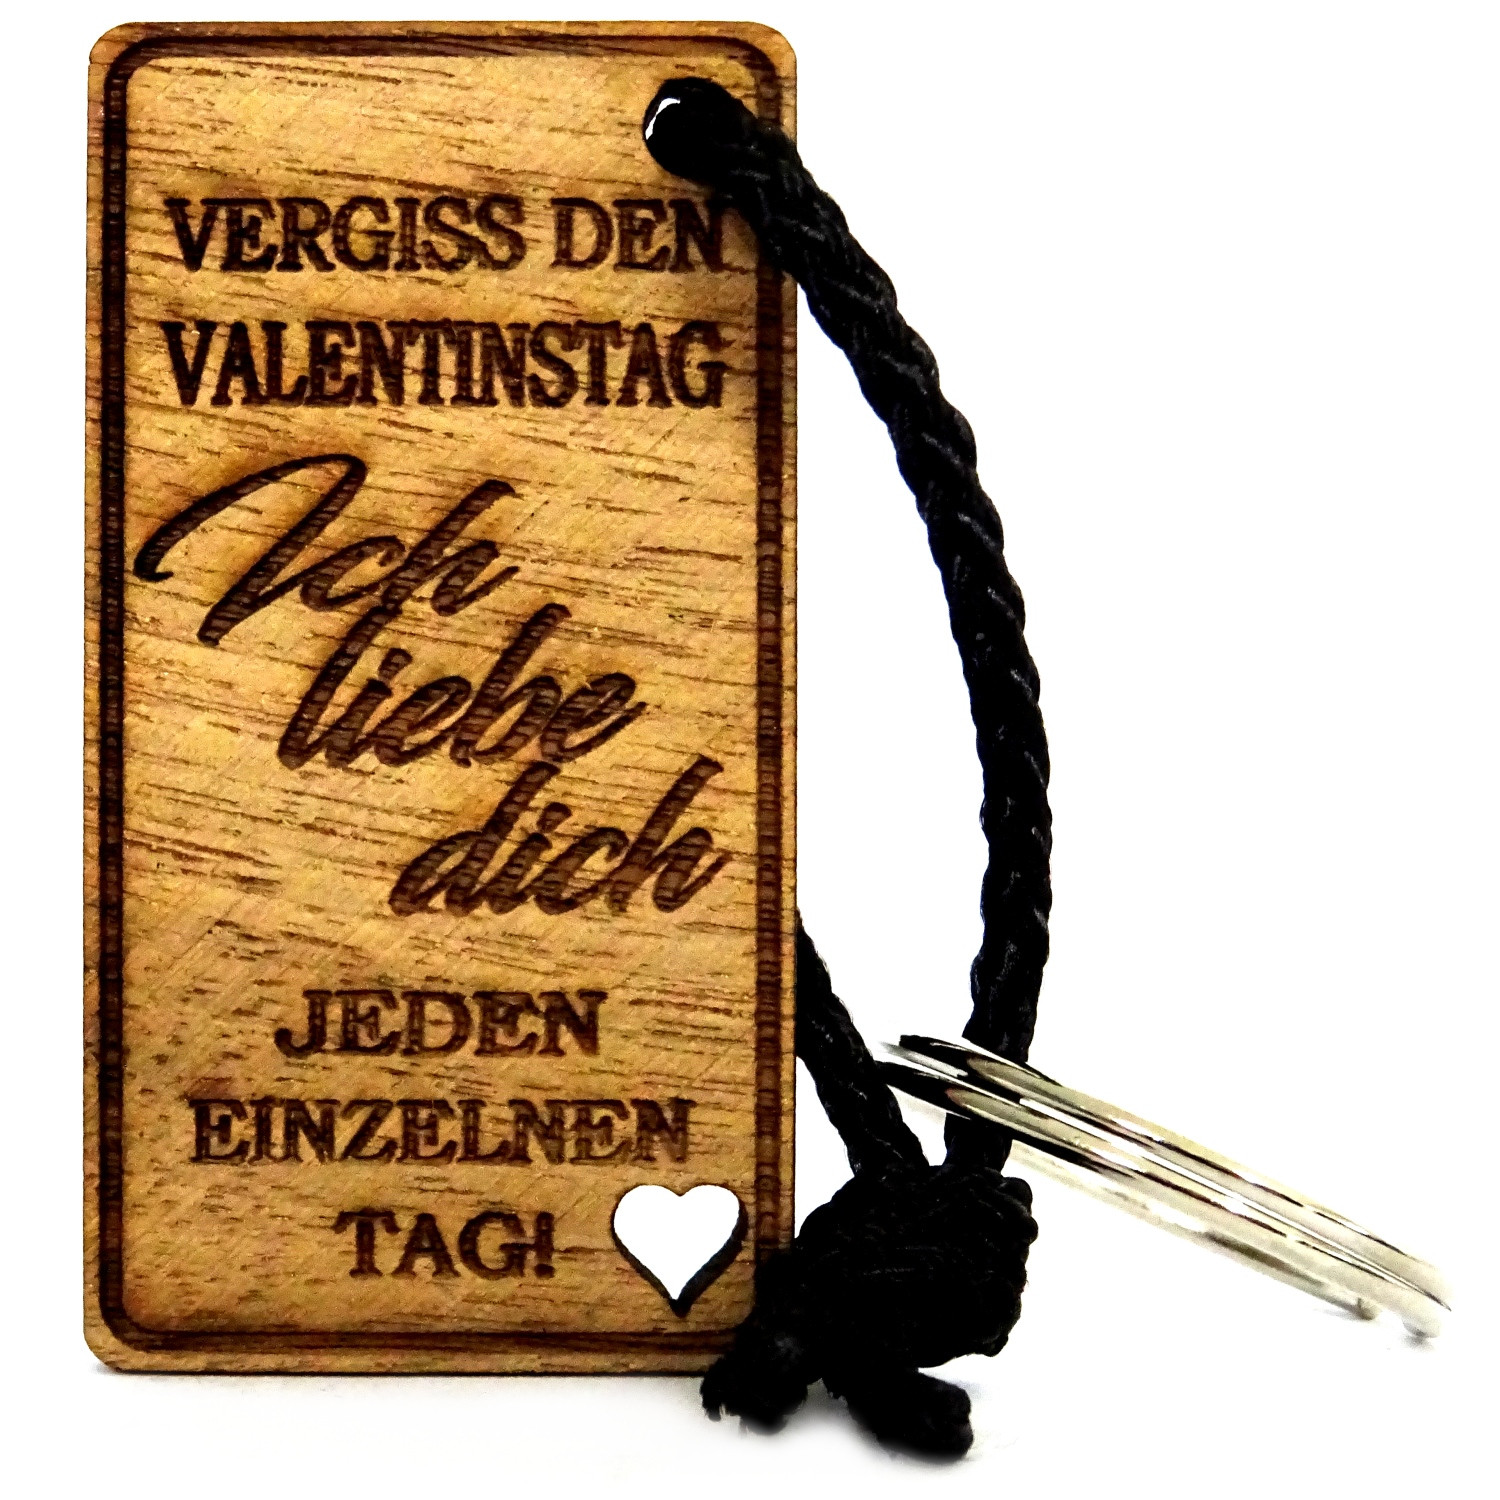 Vergiss den Valentinstag - Schlüsselanhänger